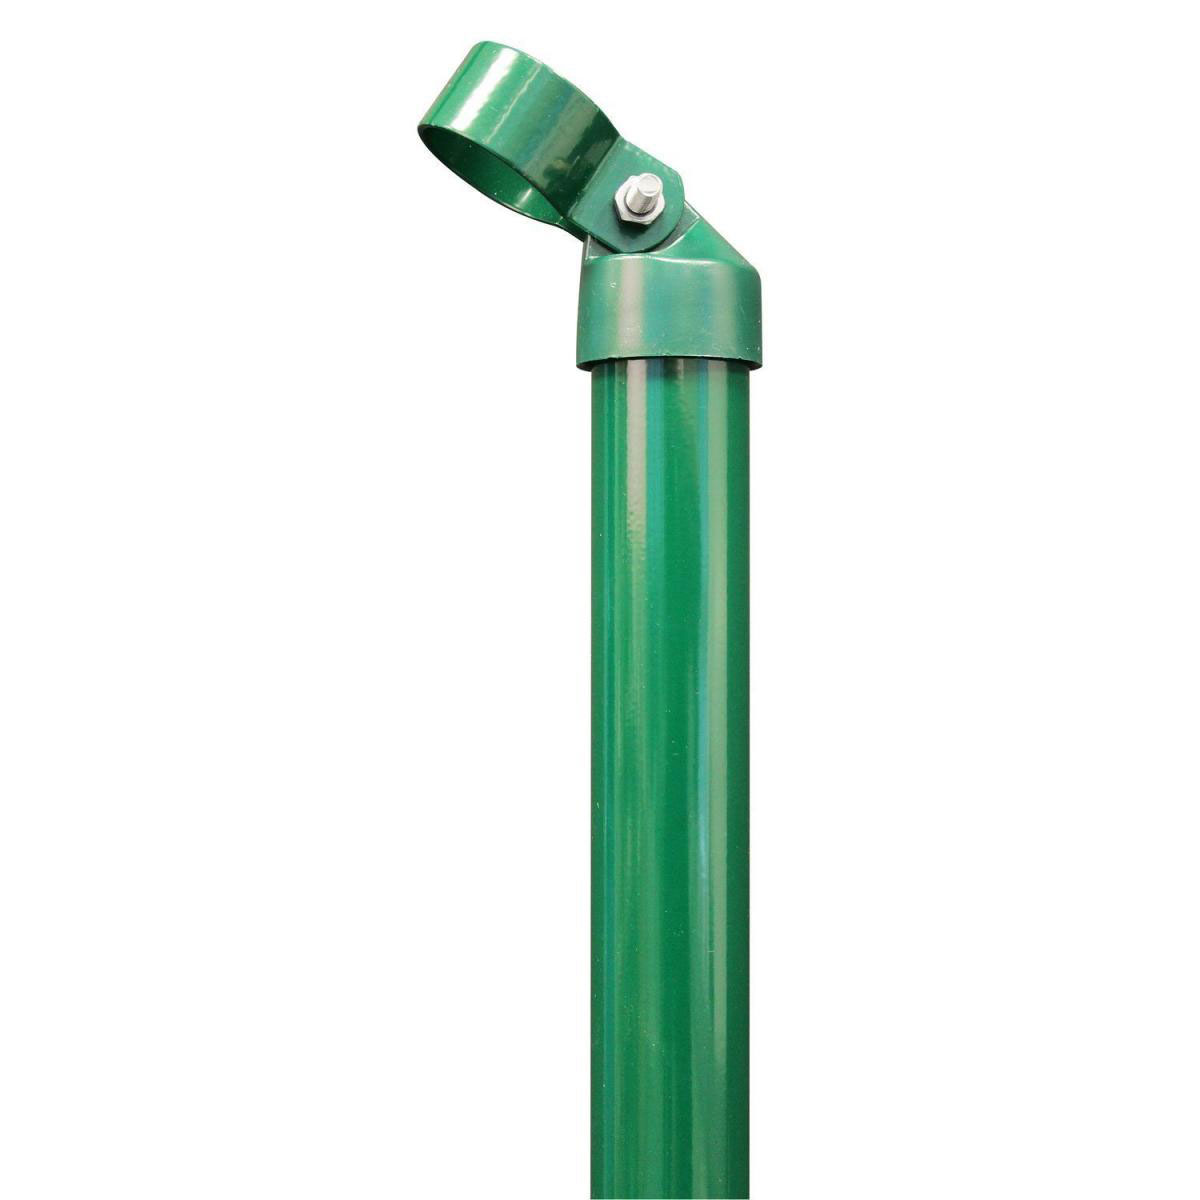 Strebe grün, Durchmesser 34 mm/1750/Schelle 34 mm